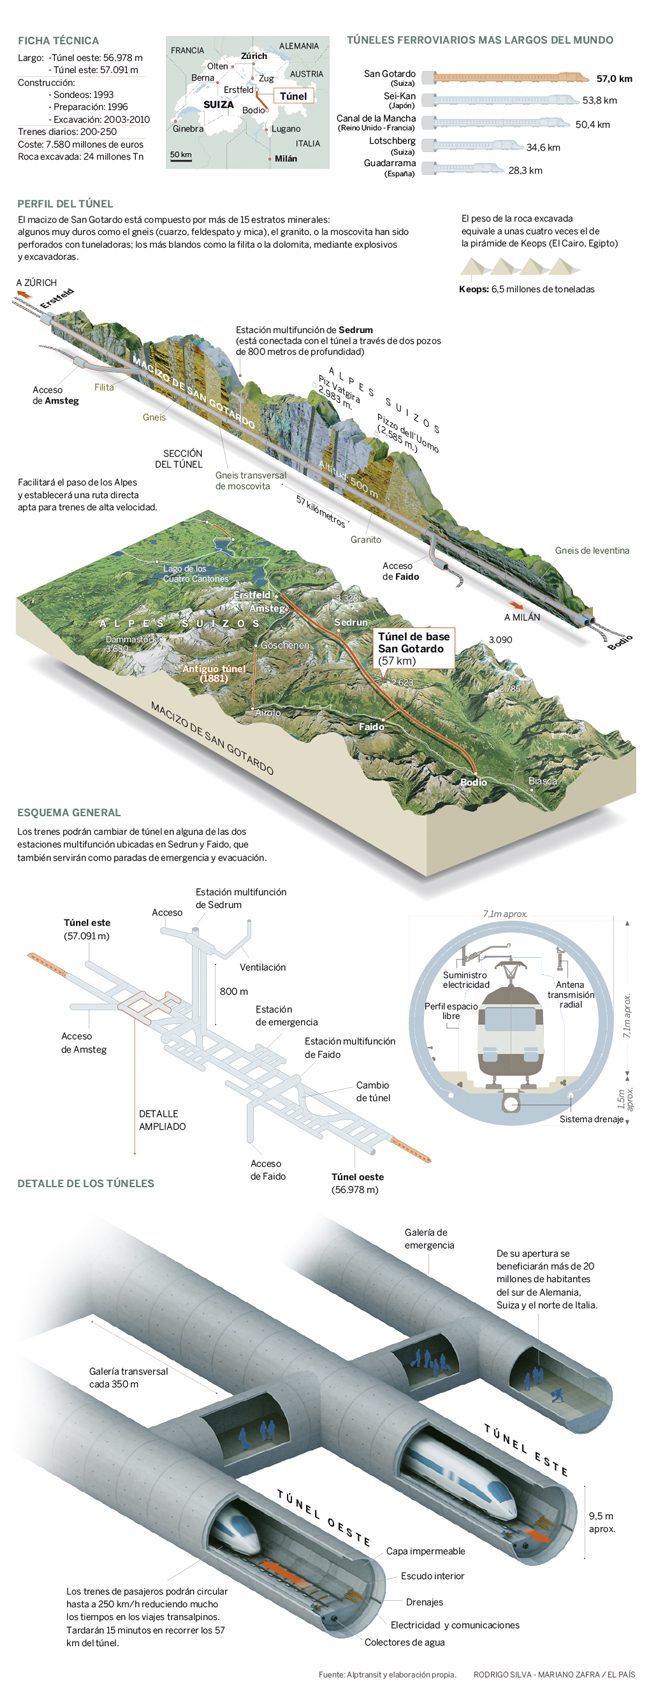 Infografía de Mariano Zafra para el artículo de El País "El túnel de San Gotardo"